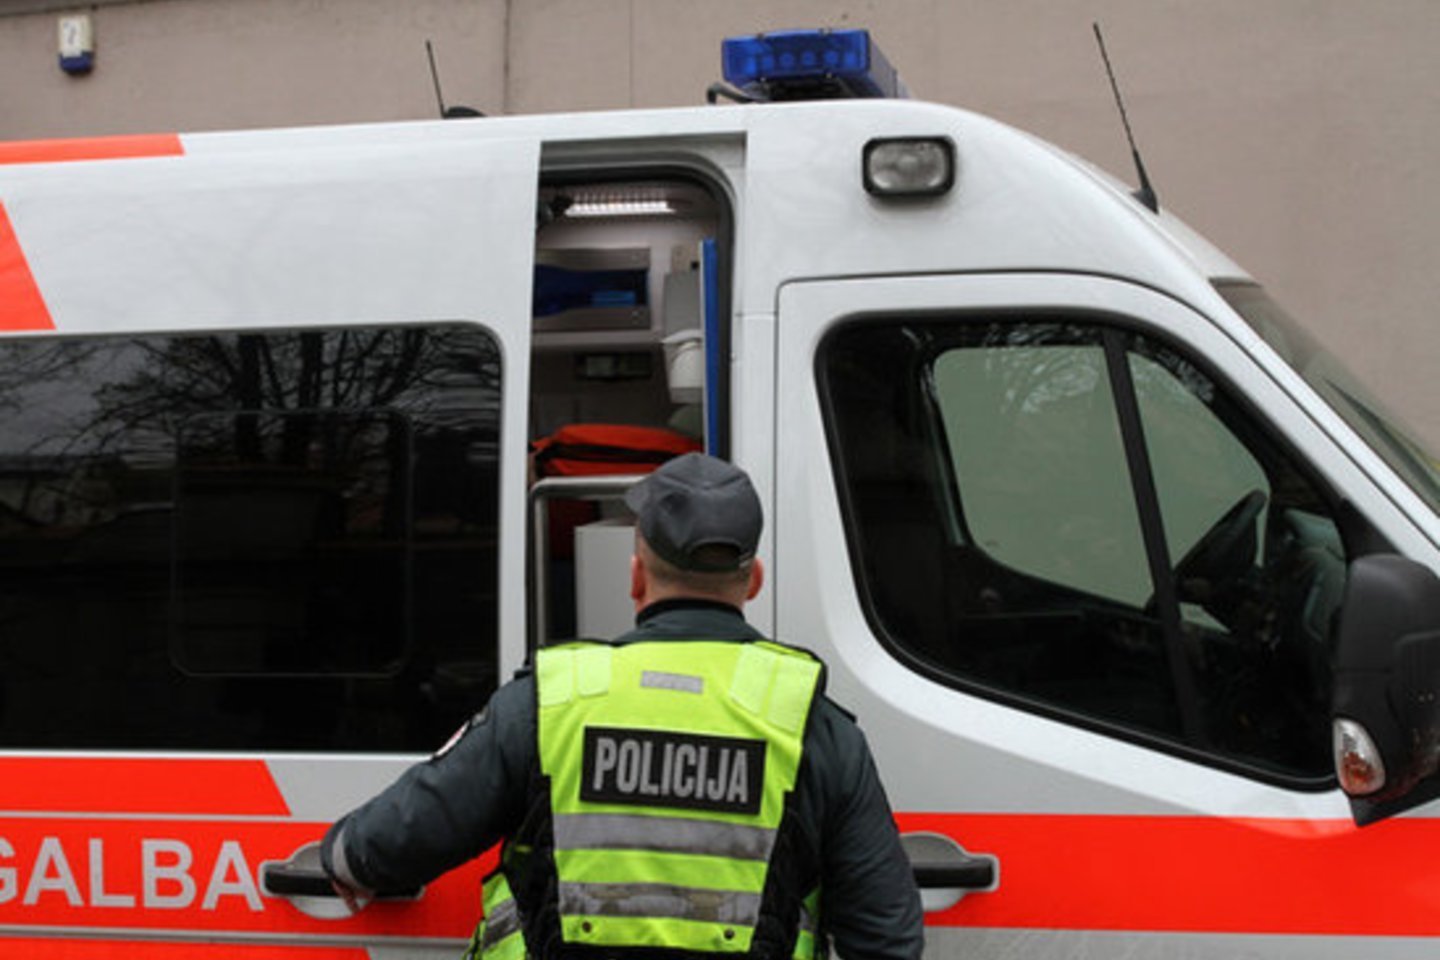  Radviliškio rajone sugėrovą peiliu sužeidusi pensininkė atsidūrė areštinėje. <br> M.Patašiaus asociatyvioji nuotr. 